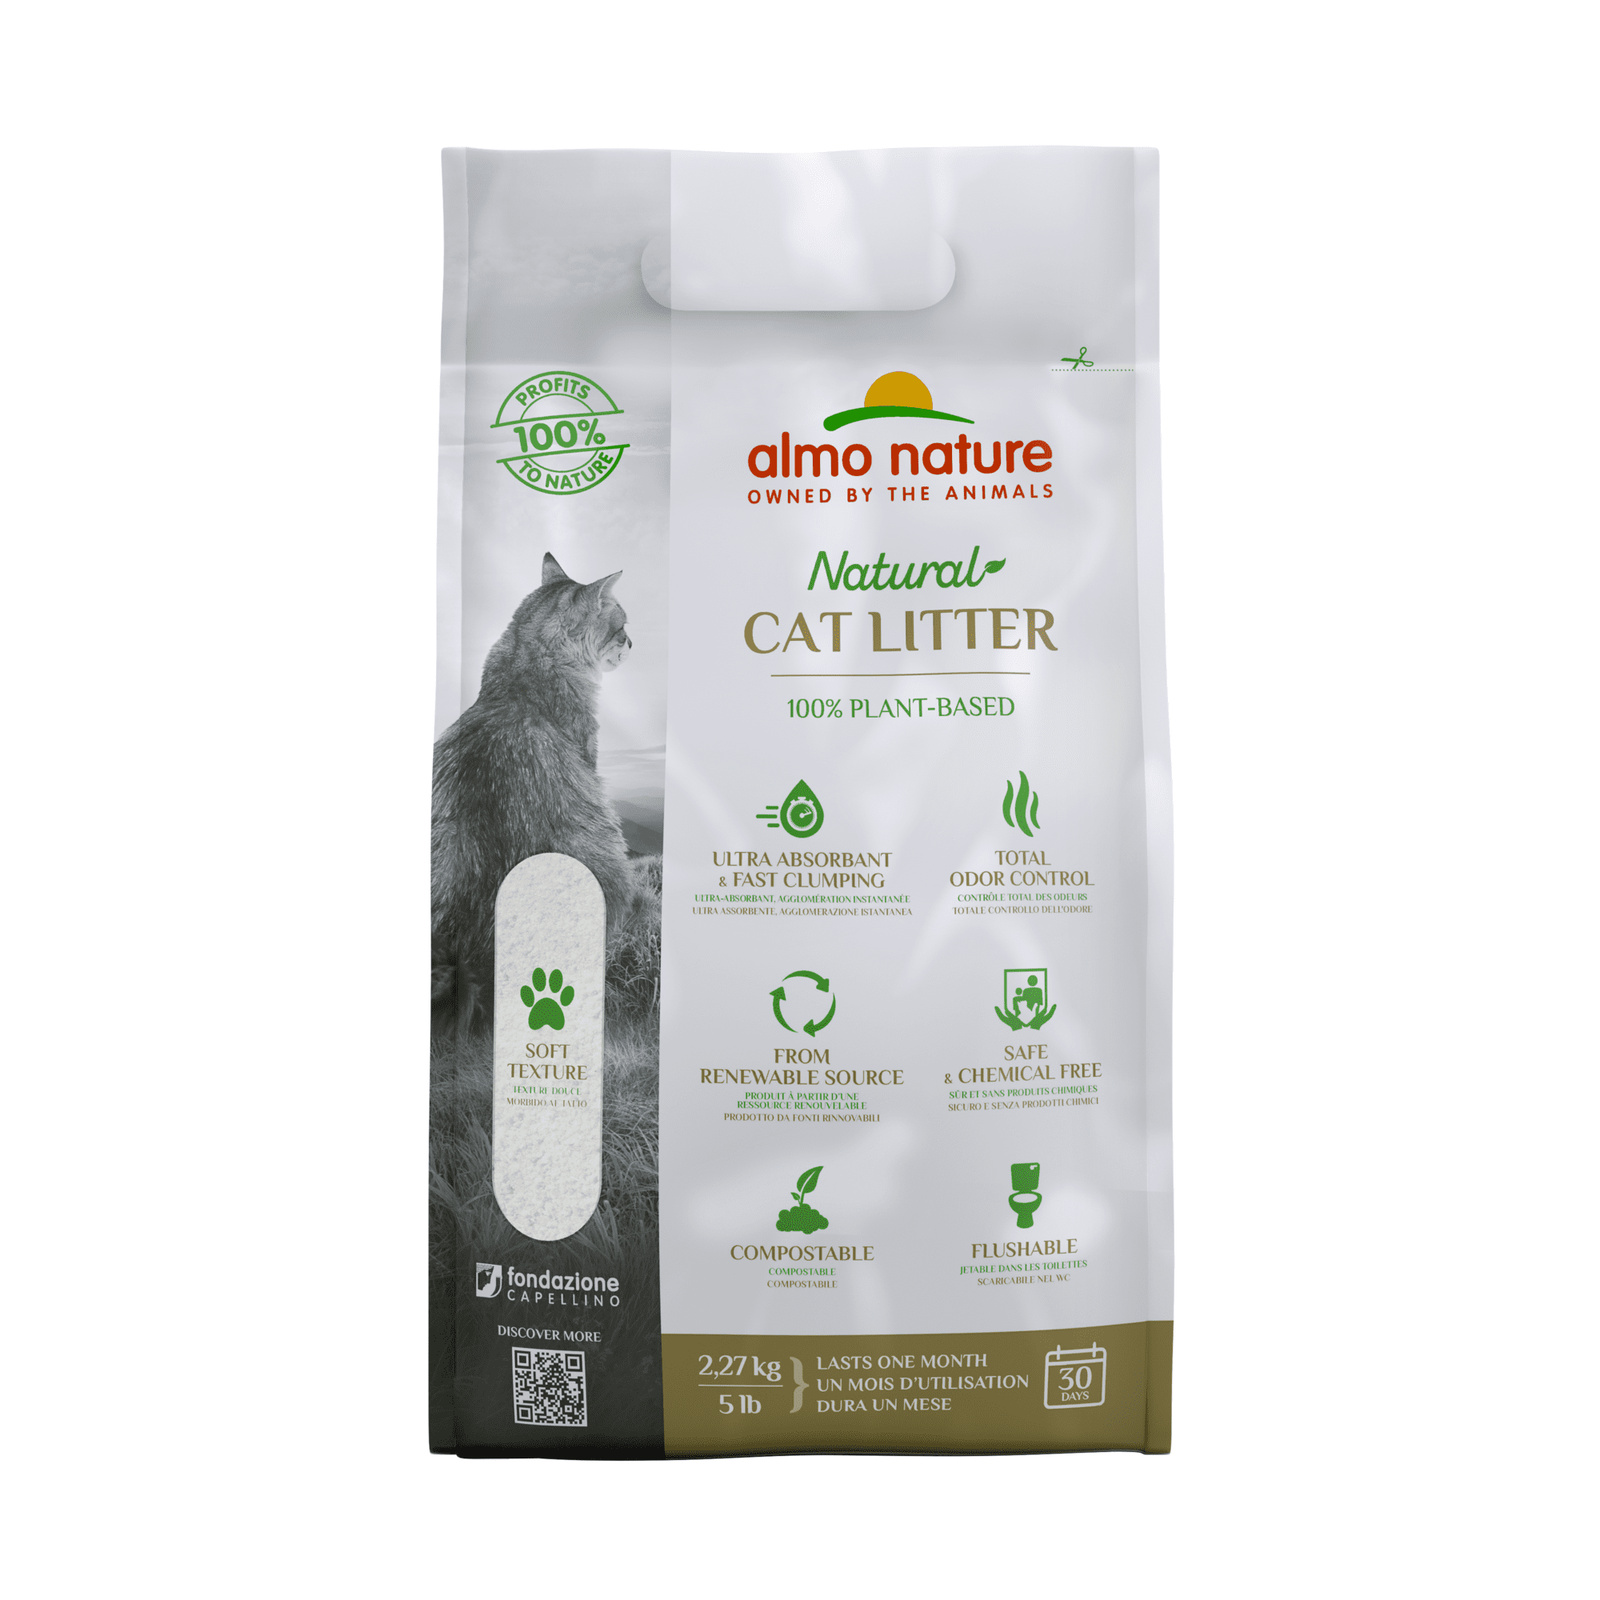 Almo Nature Cat Litter 100% натуральный биоразлагаемый комкующийся наполнитель (2,27 кг) Almo Nature Cat Litter